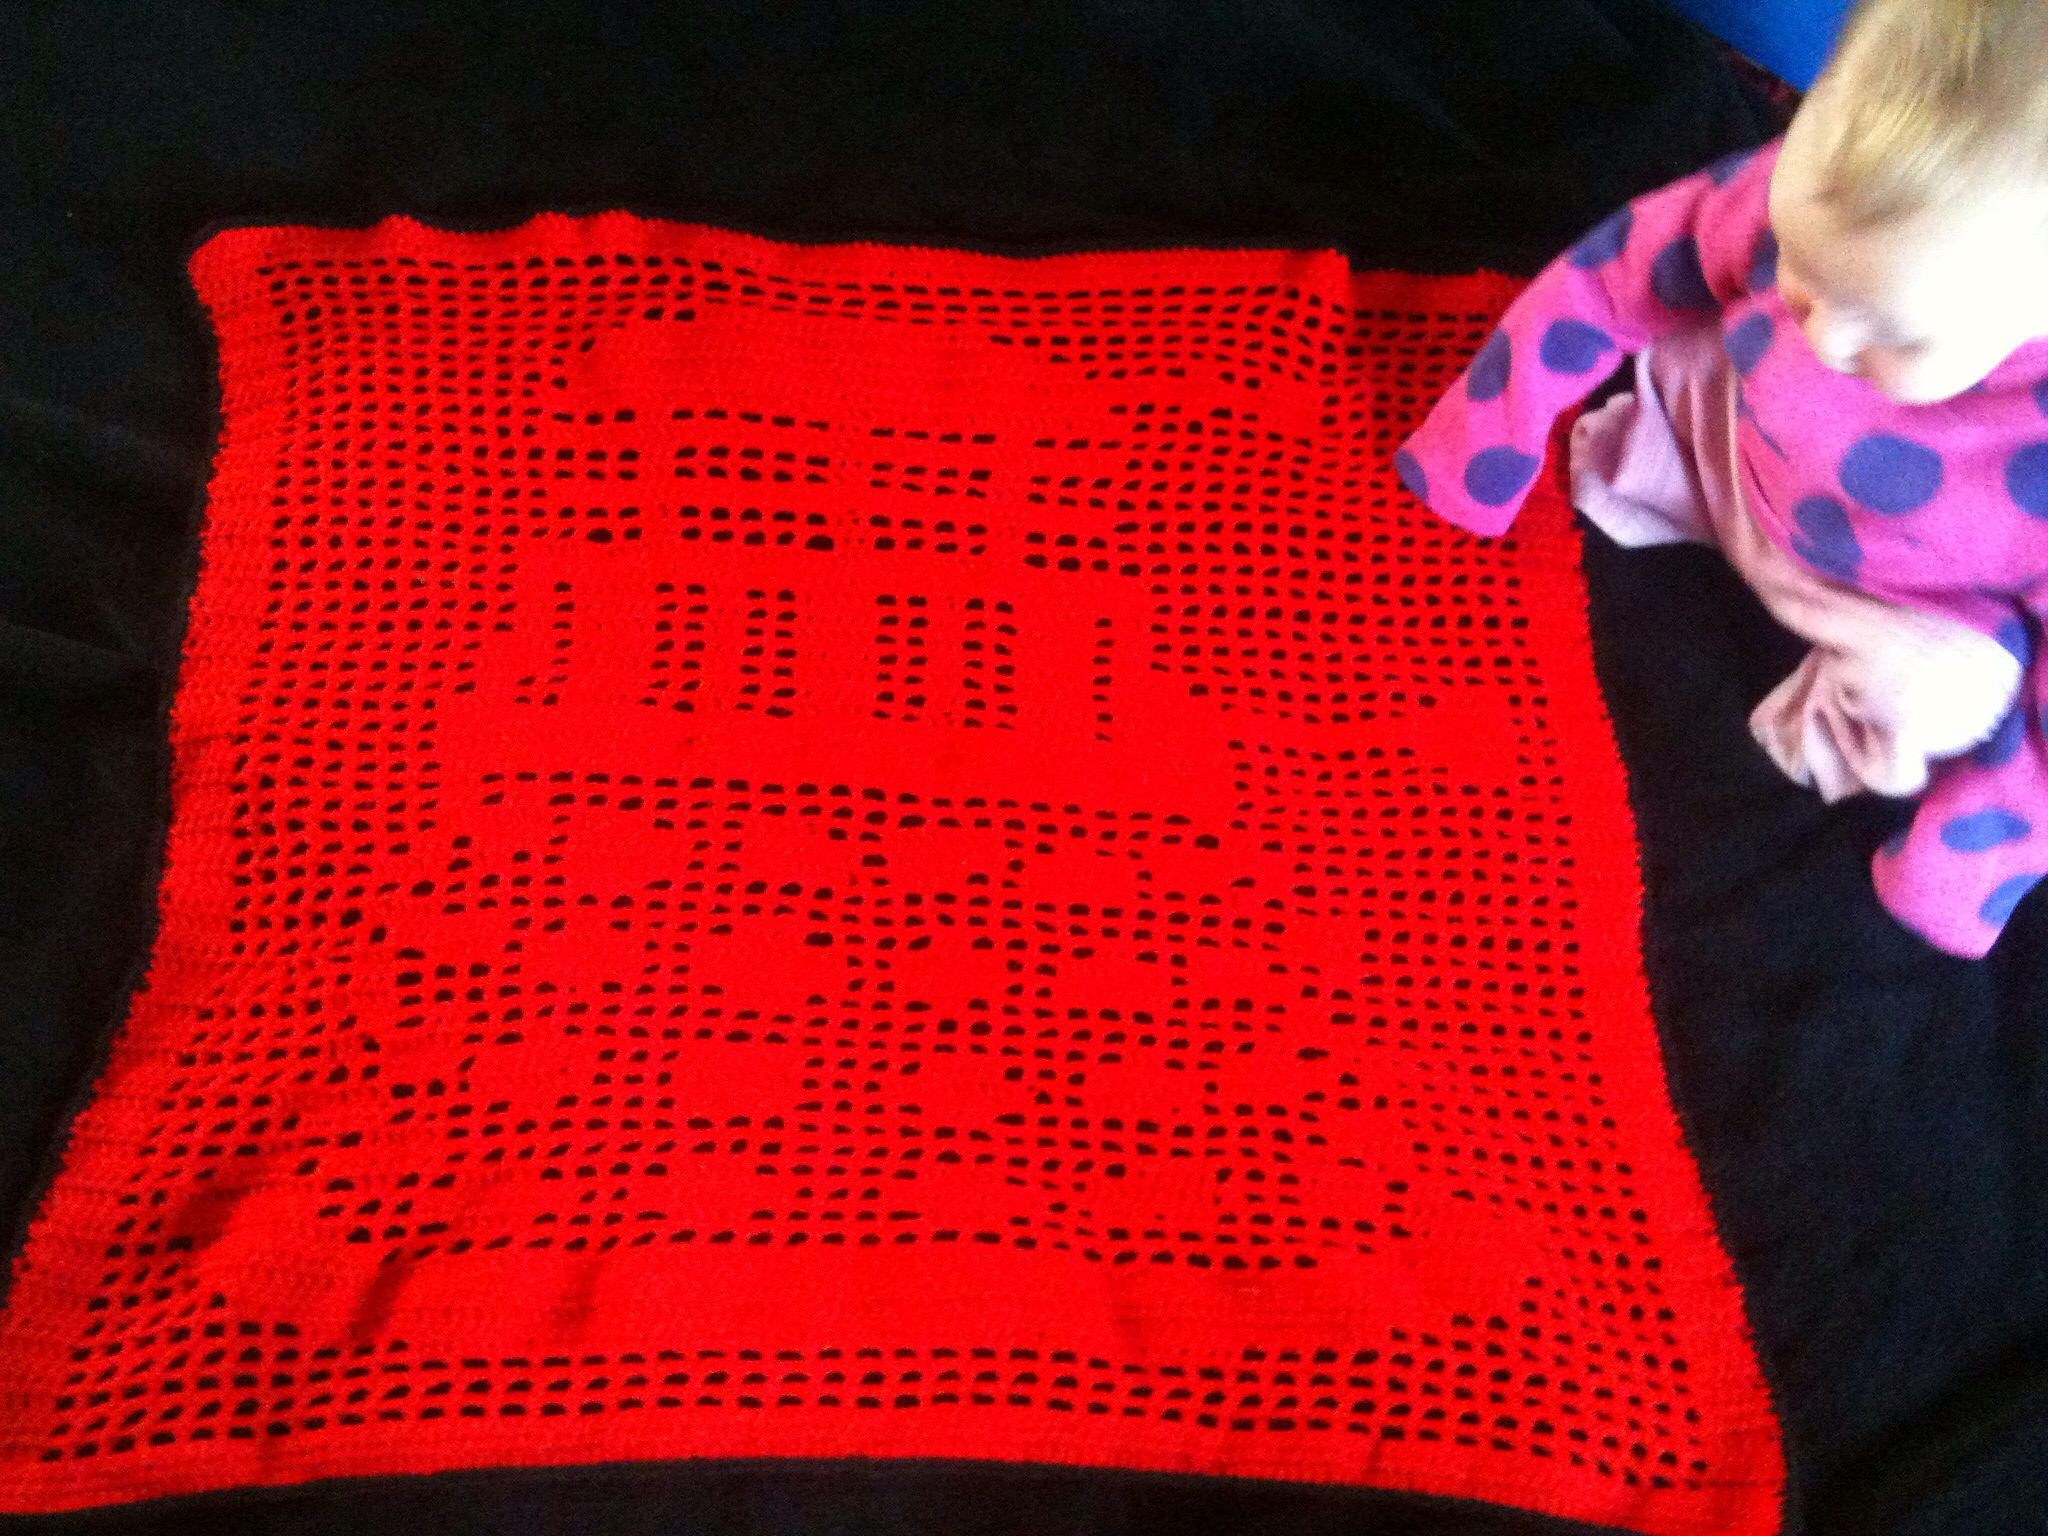 Doctor Who Crochet Blanket Pattern Dalek Doctor Who Filet Crochet Blanket Crafty Crochet Crochet